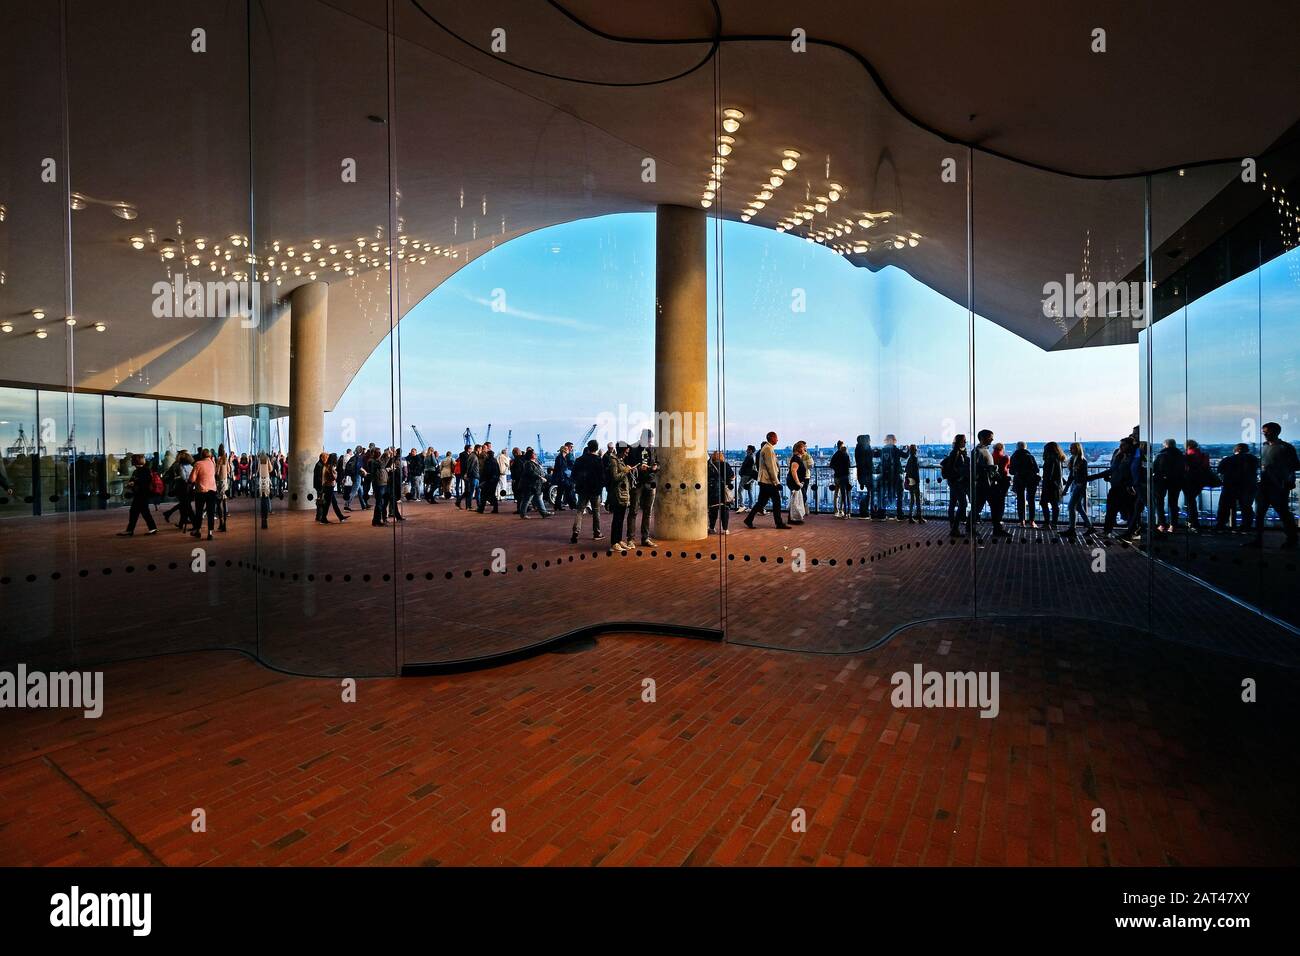 Piattaforma di osservazione presso la sala concerti Elbphilharmonie nel porto di Amburgo, Amburgo, Germania Foto Stock